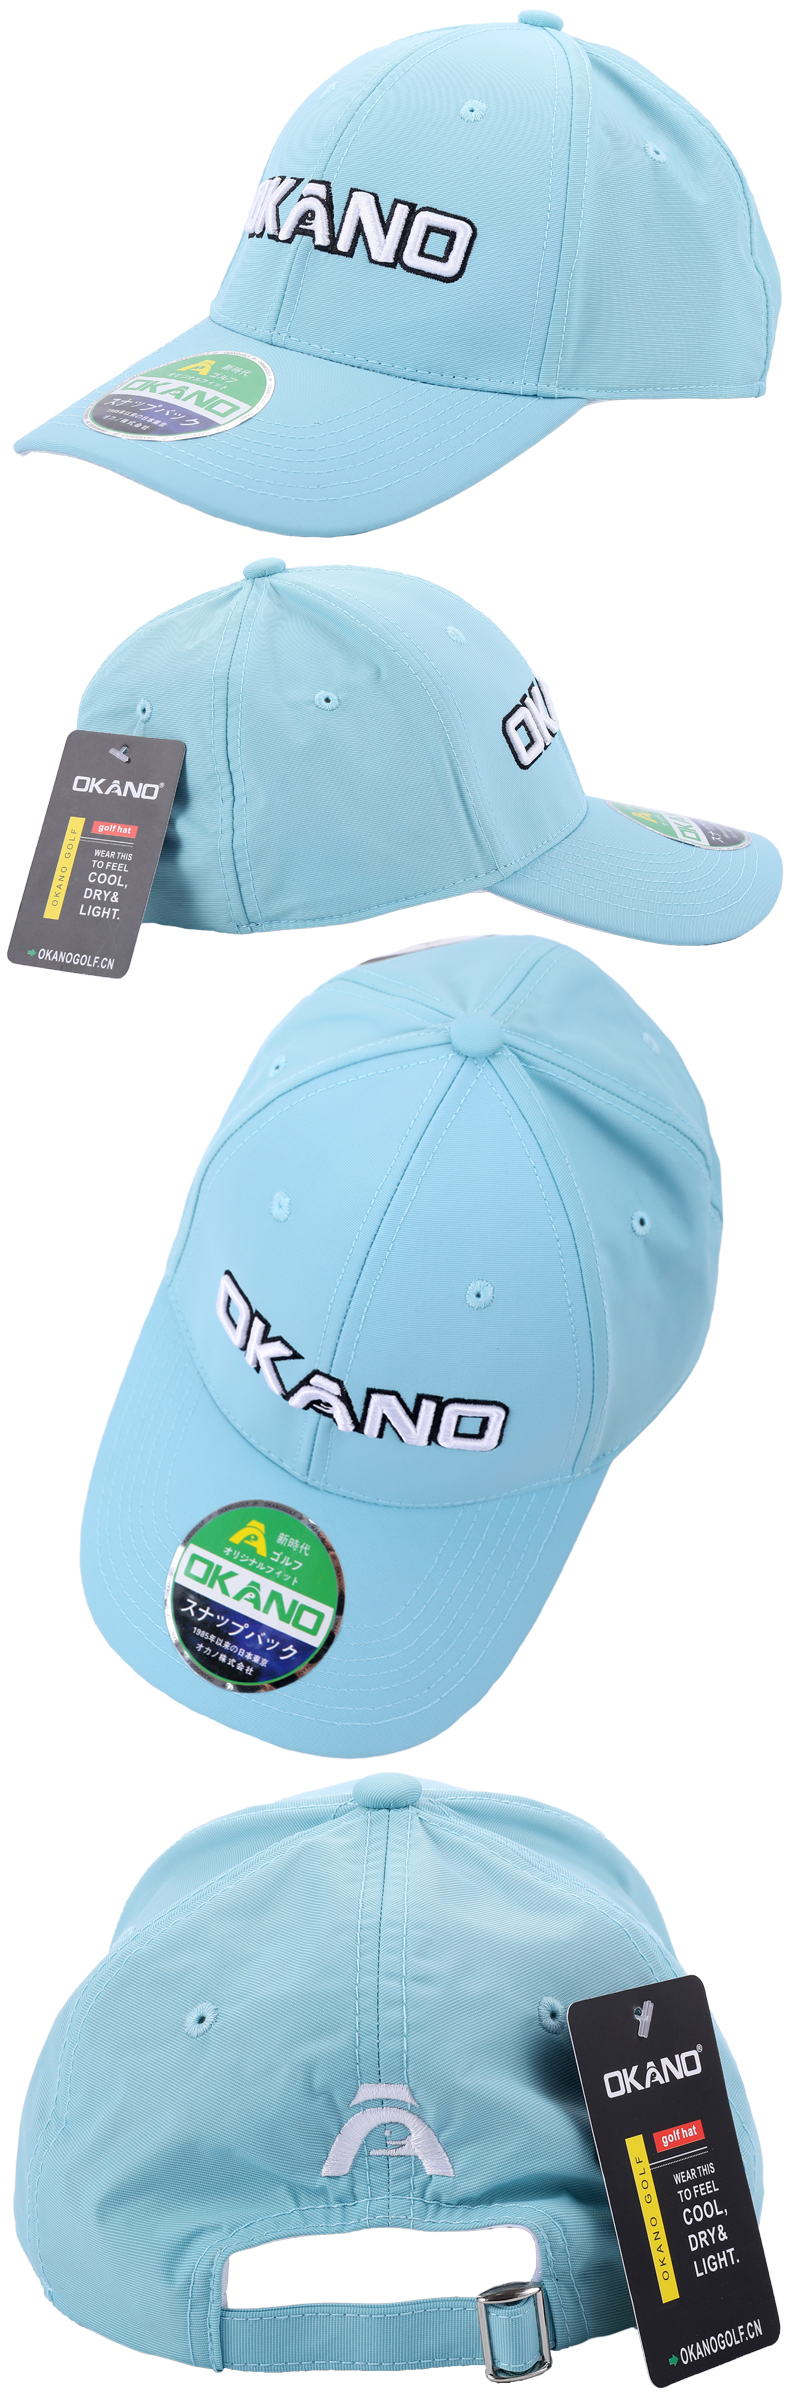 日本OKANO高尔夫男女球帽 透气网球帽 防晒遮阳 可调节职业款男帽